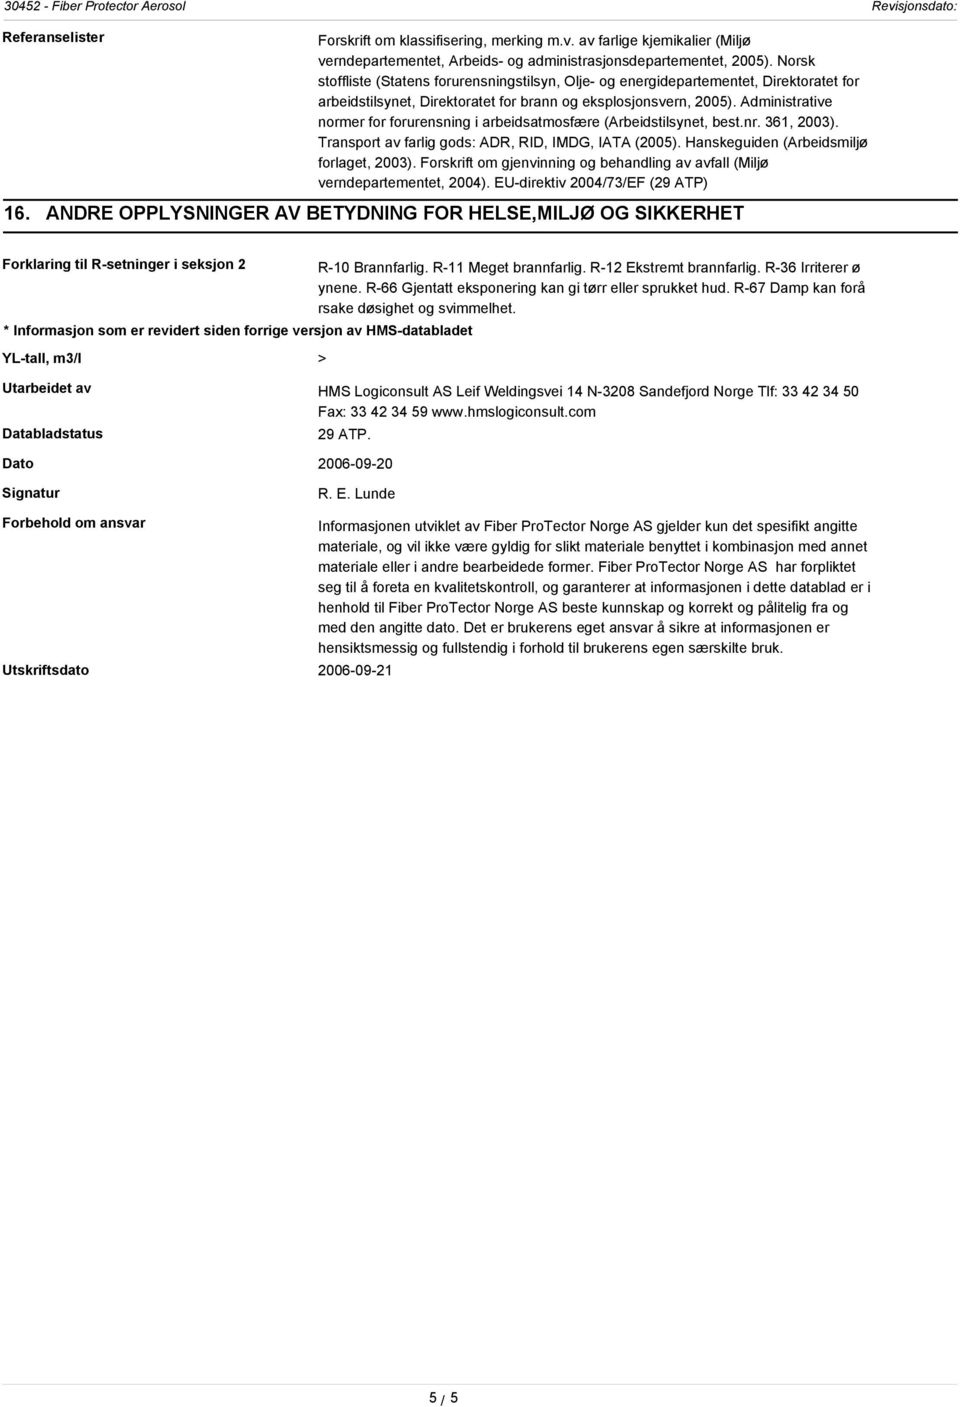 Administrative normer for forurensning i arbeidsatmosfære (Arbeidstilsynet, best.nr. 361, 2003). Transport av farlig gods: ADR, RID, IMDG, IATA (2005). Hanskeguiden (Arbeidsmiljø forlaget, 2003).